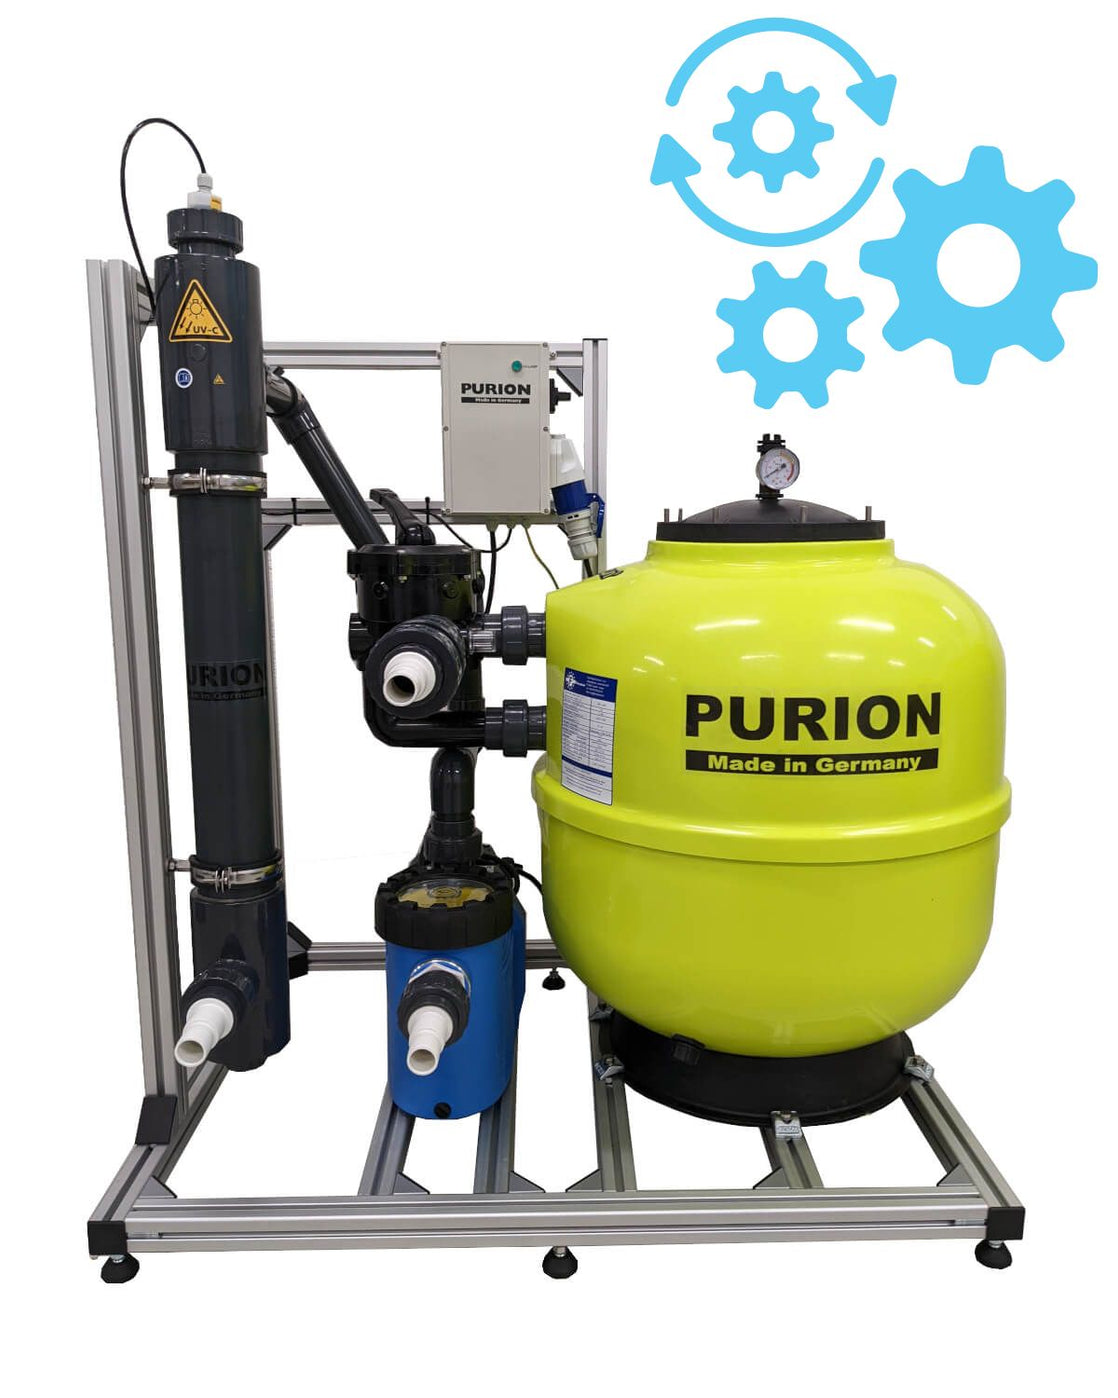 Das automatische Reinigungssystem PURION Pool Premium der UV Concept GmbH umfasst eine Pumpe und eine UV-Anlage für eine effiziente Reinigung.